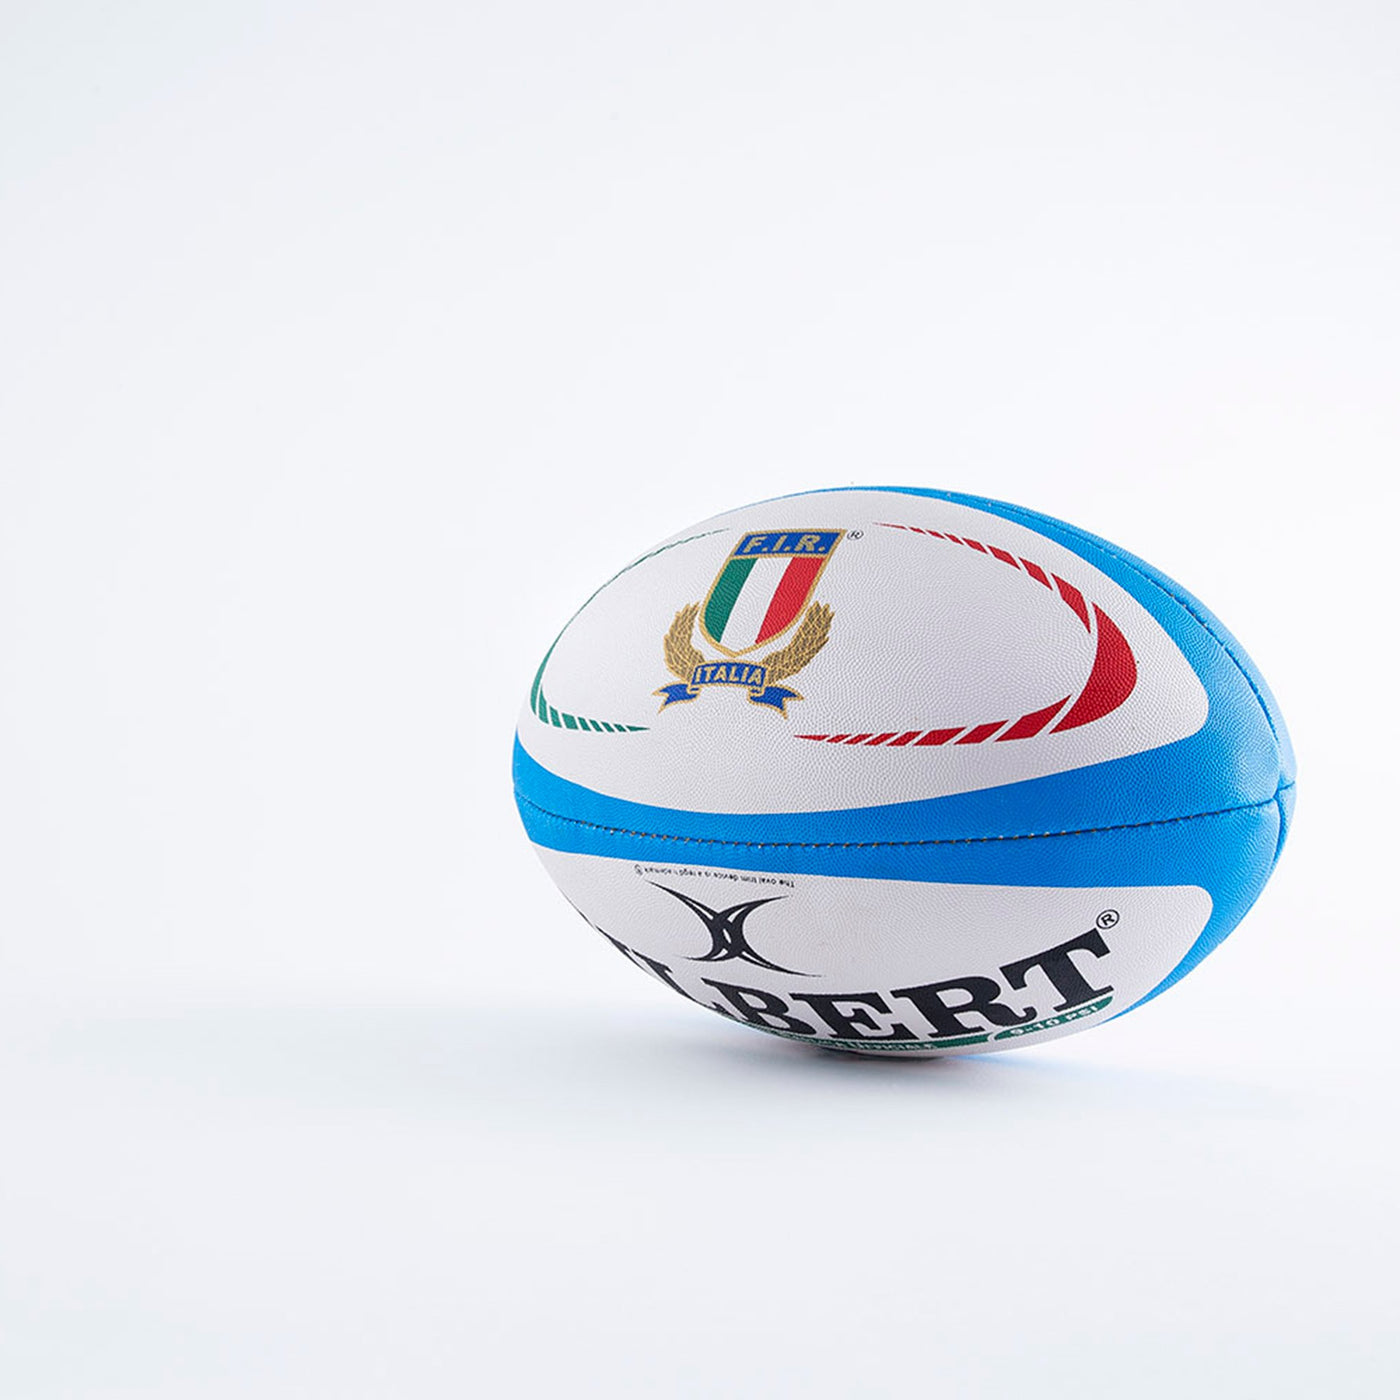 Ballon de Rugby Italie Réplique Midi